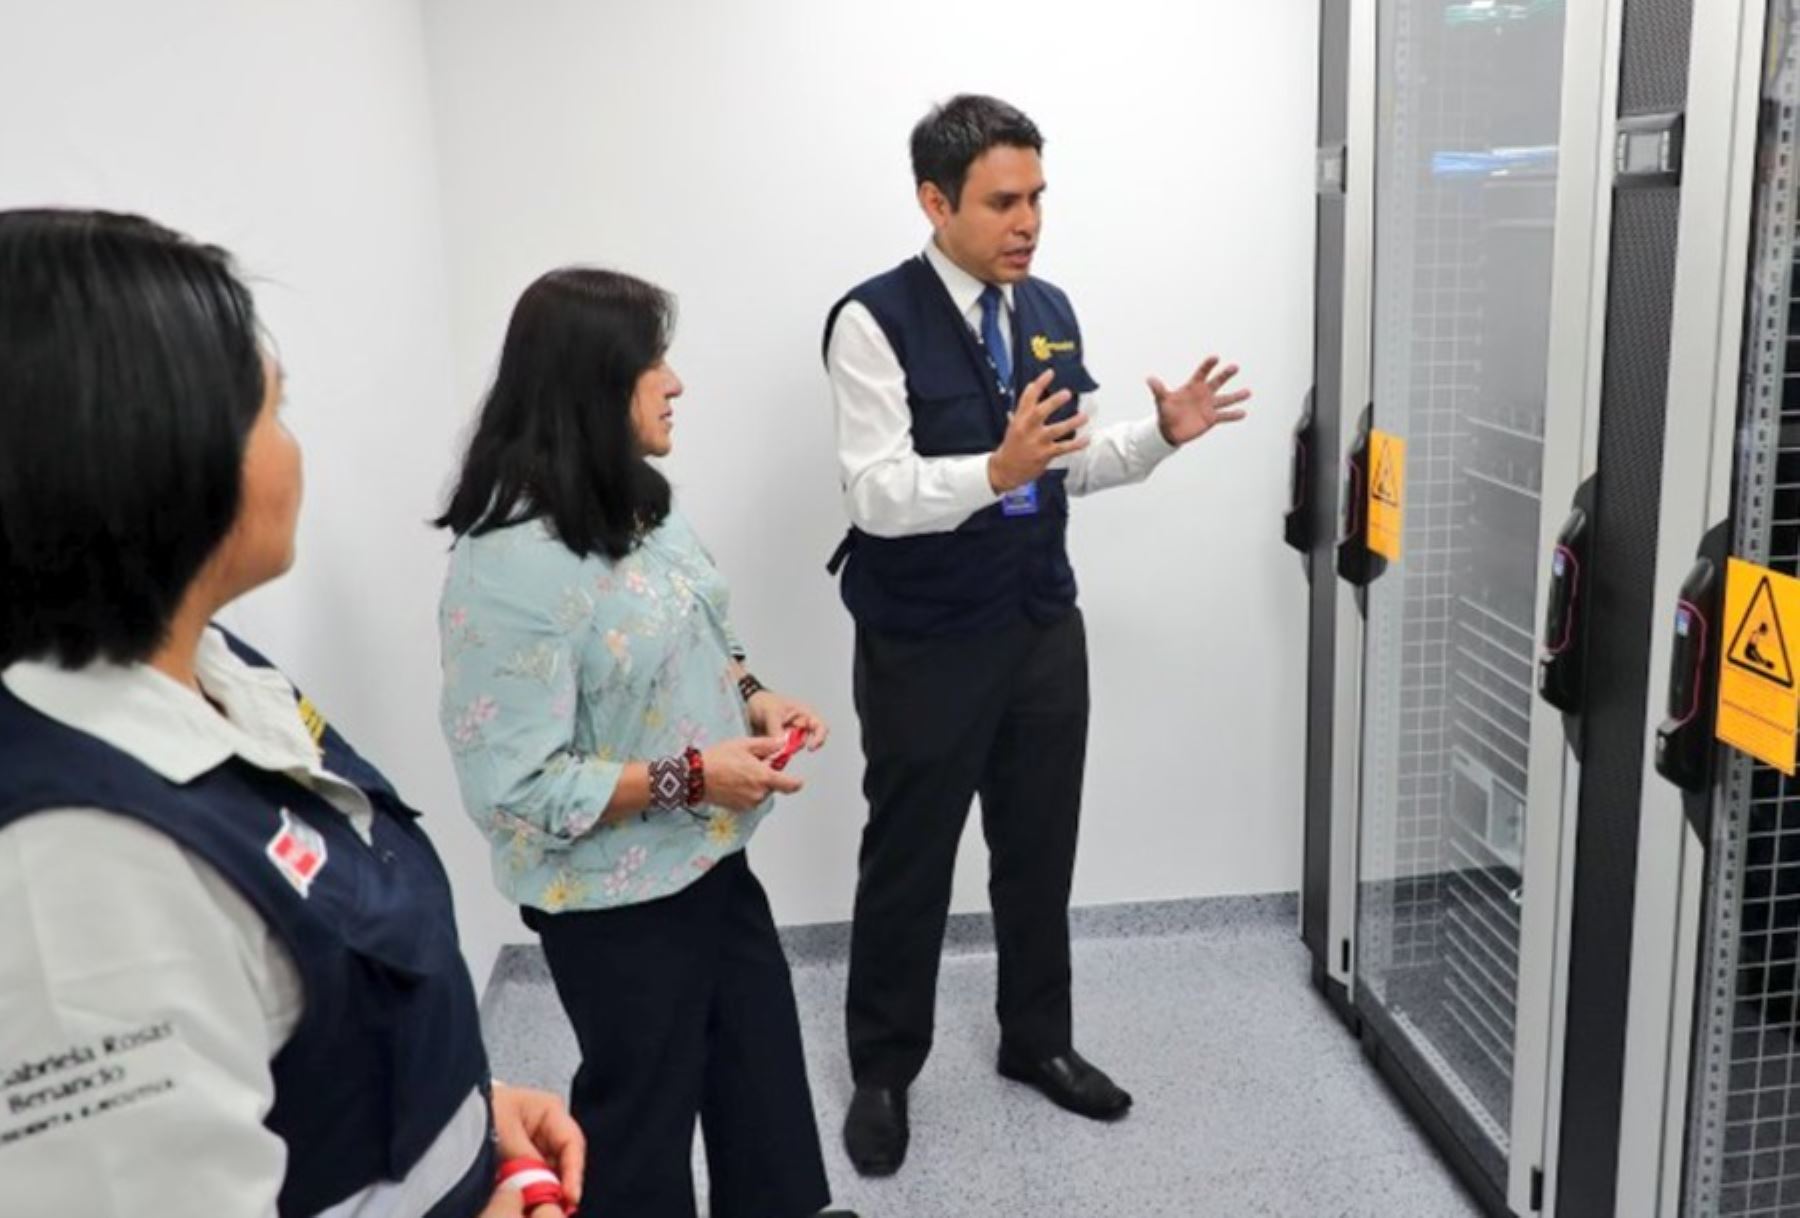 Un moderno centro informático de alto rendimiento, denominado Nuna puso en marcha el Servicio Nacional de Meteorología e Hidrología (Senamhi) del Ministerio del Ambiente, para optimizar el monitoreo climático del país ante la presencia de El Niño.